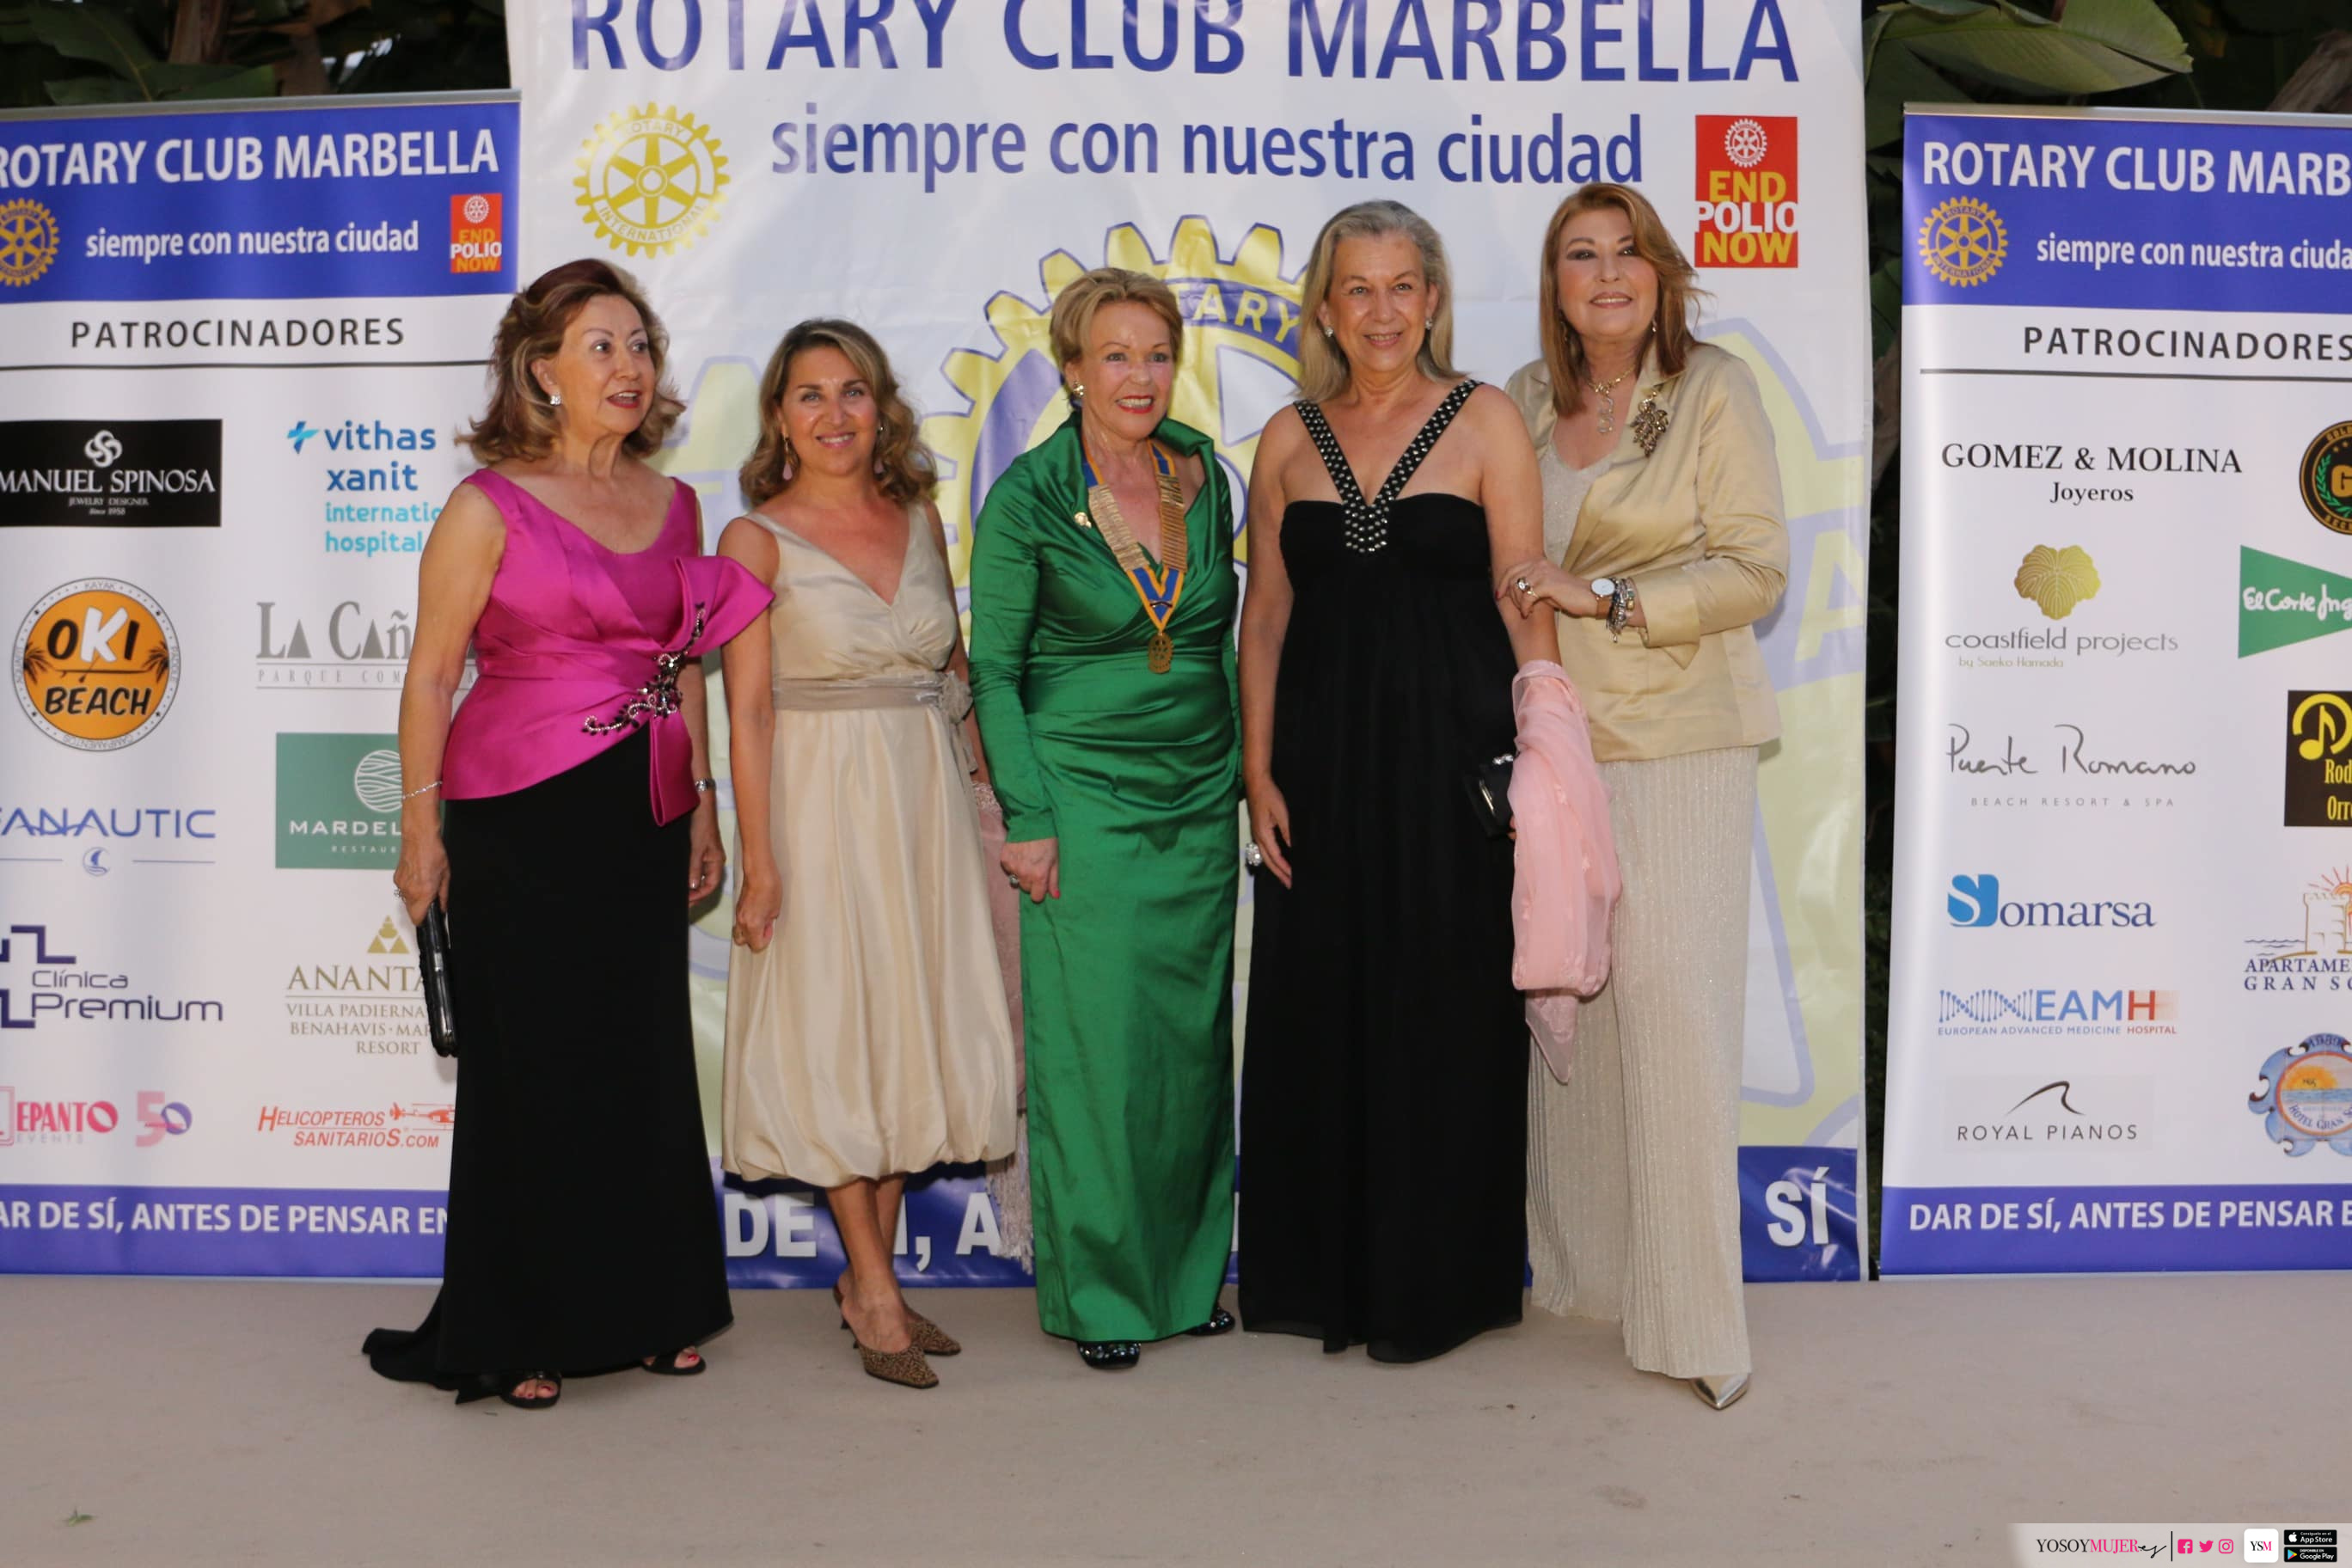 Cena de Gala junto al Rotary Club Marbella